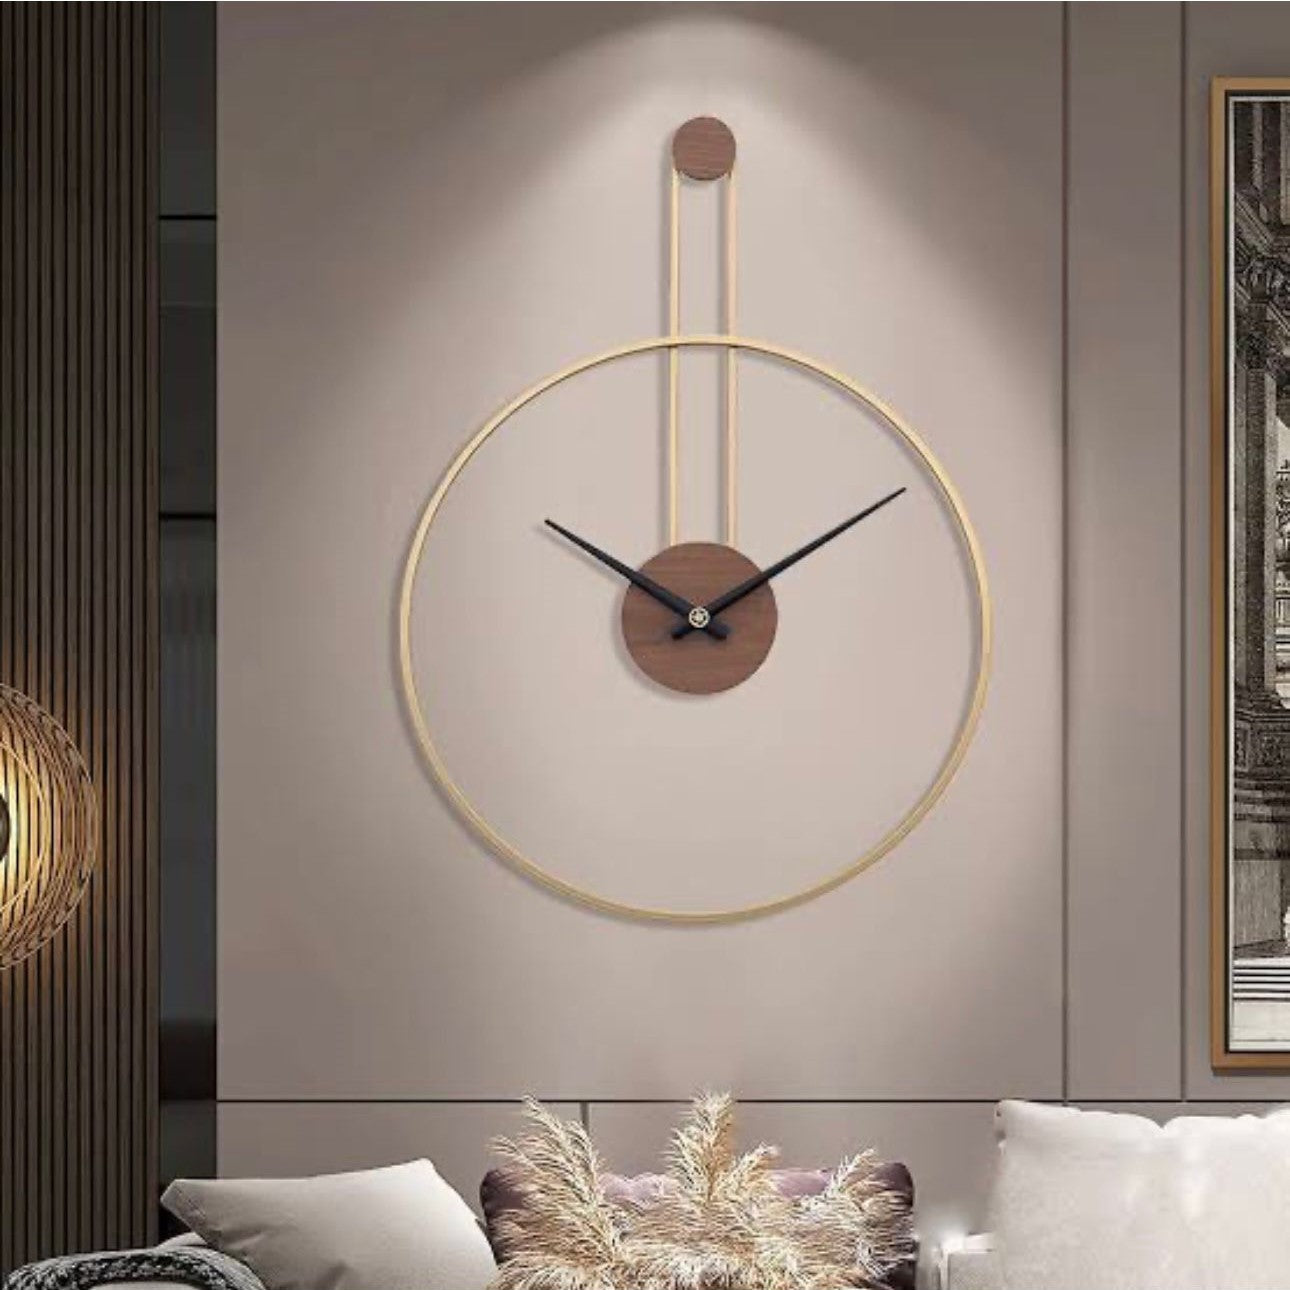 Minimalistic Swiss Clock